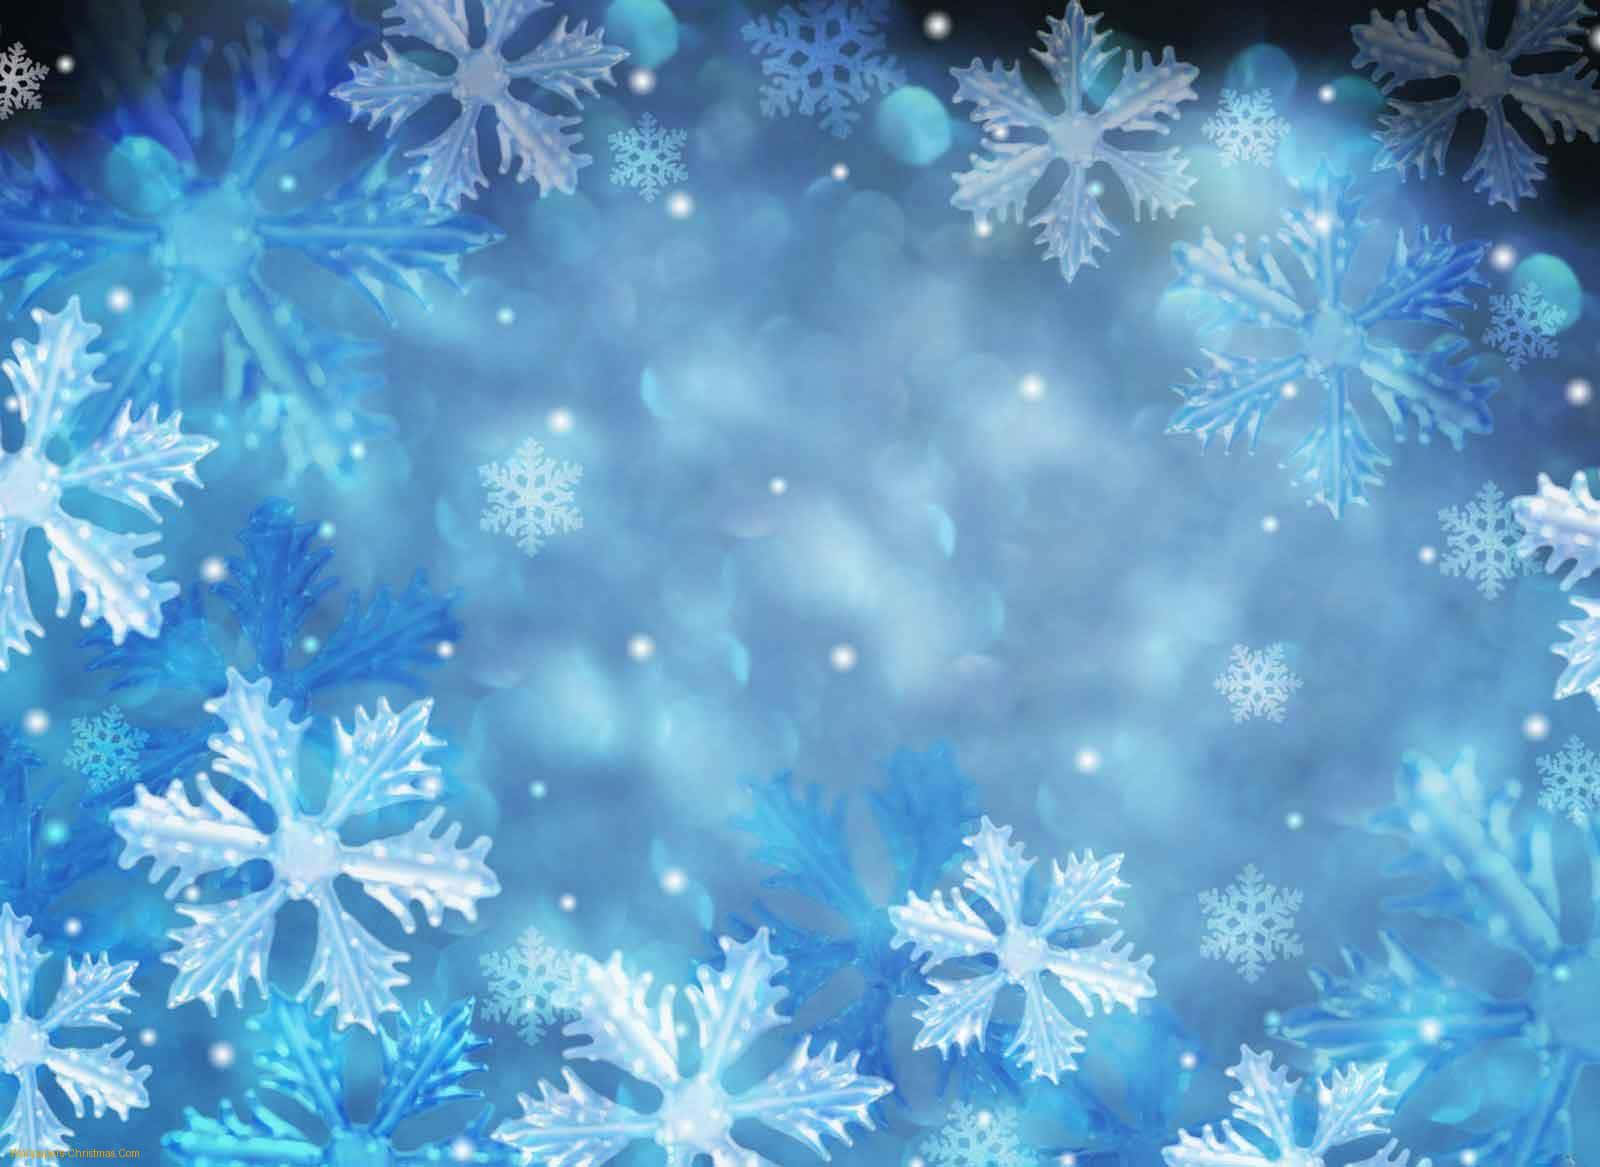 Fondode Pantalla Bokeh En Azul Con Nieve En Navidad.